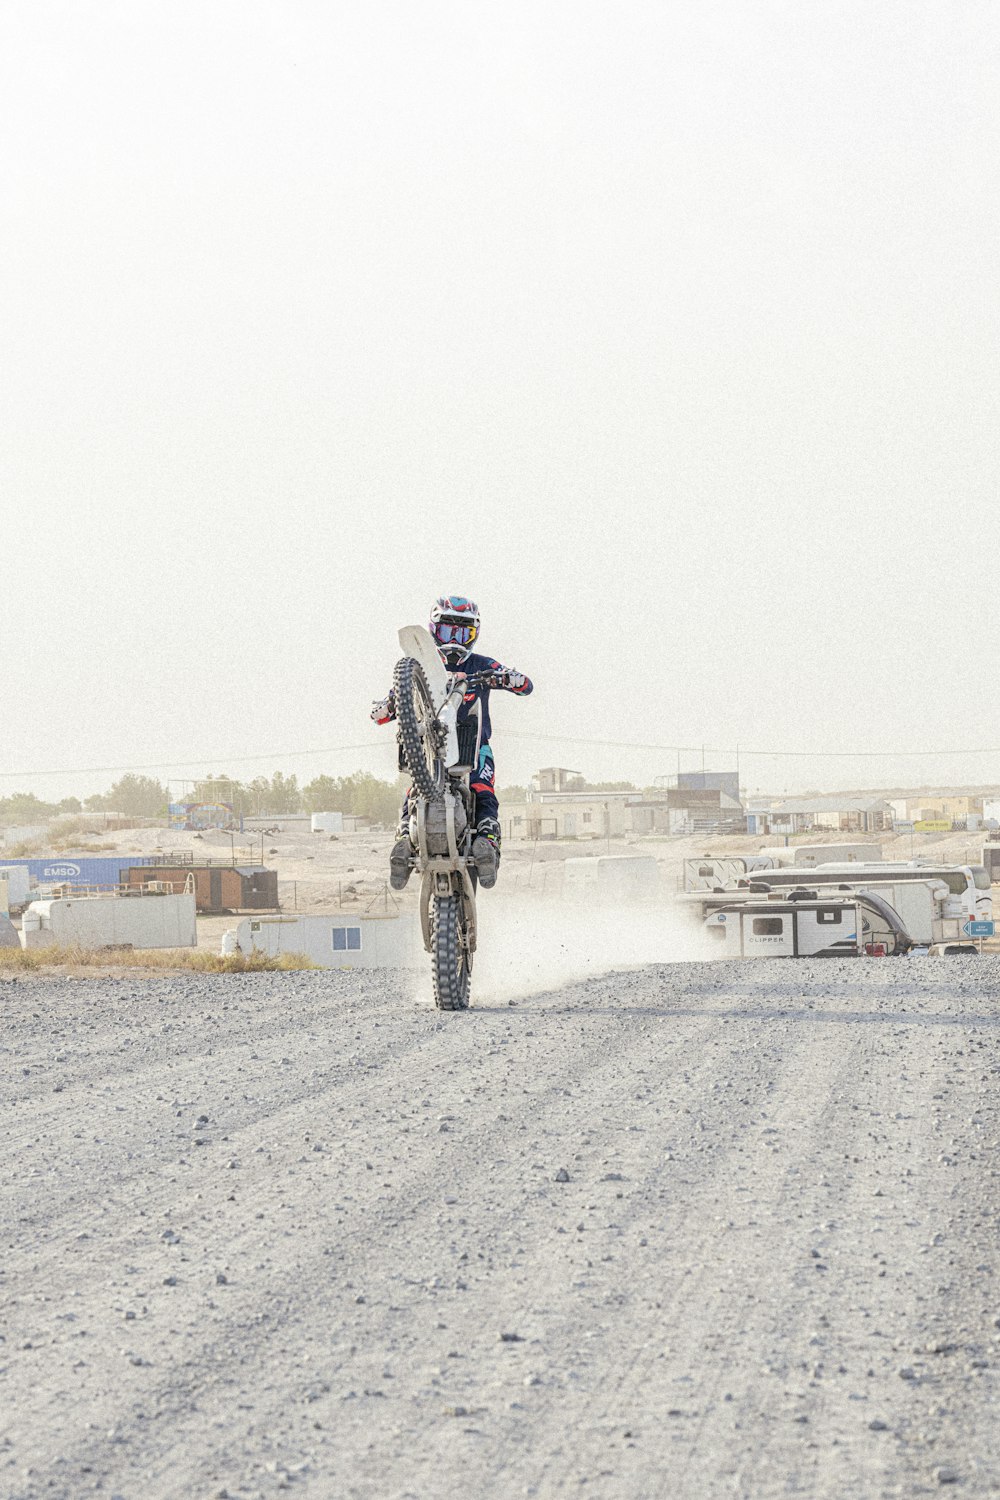 a man riding a dirt bike down a dirt road